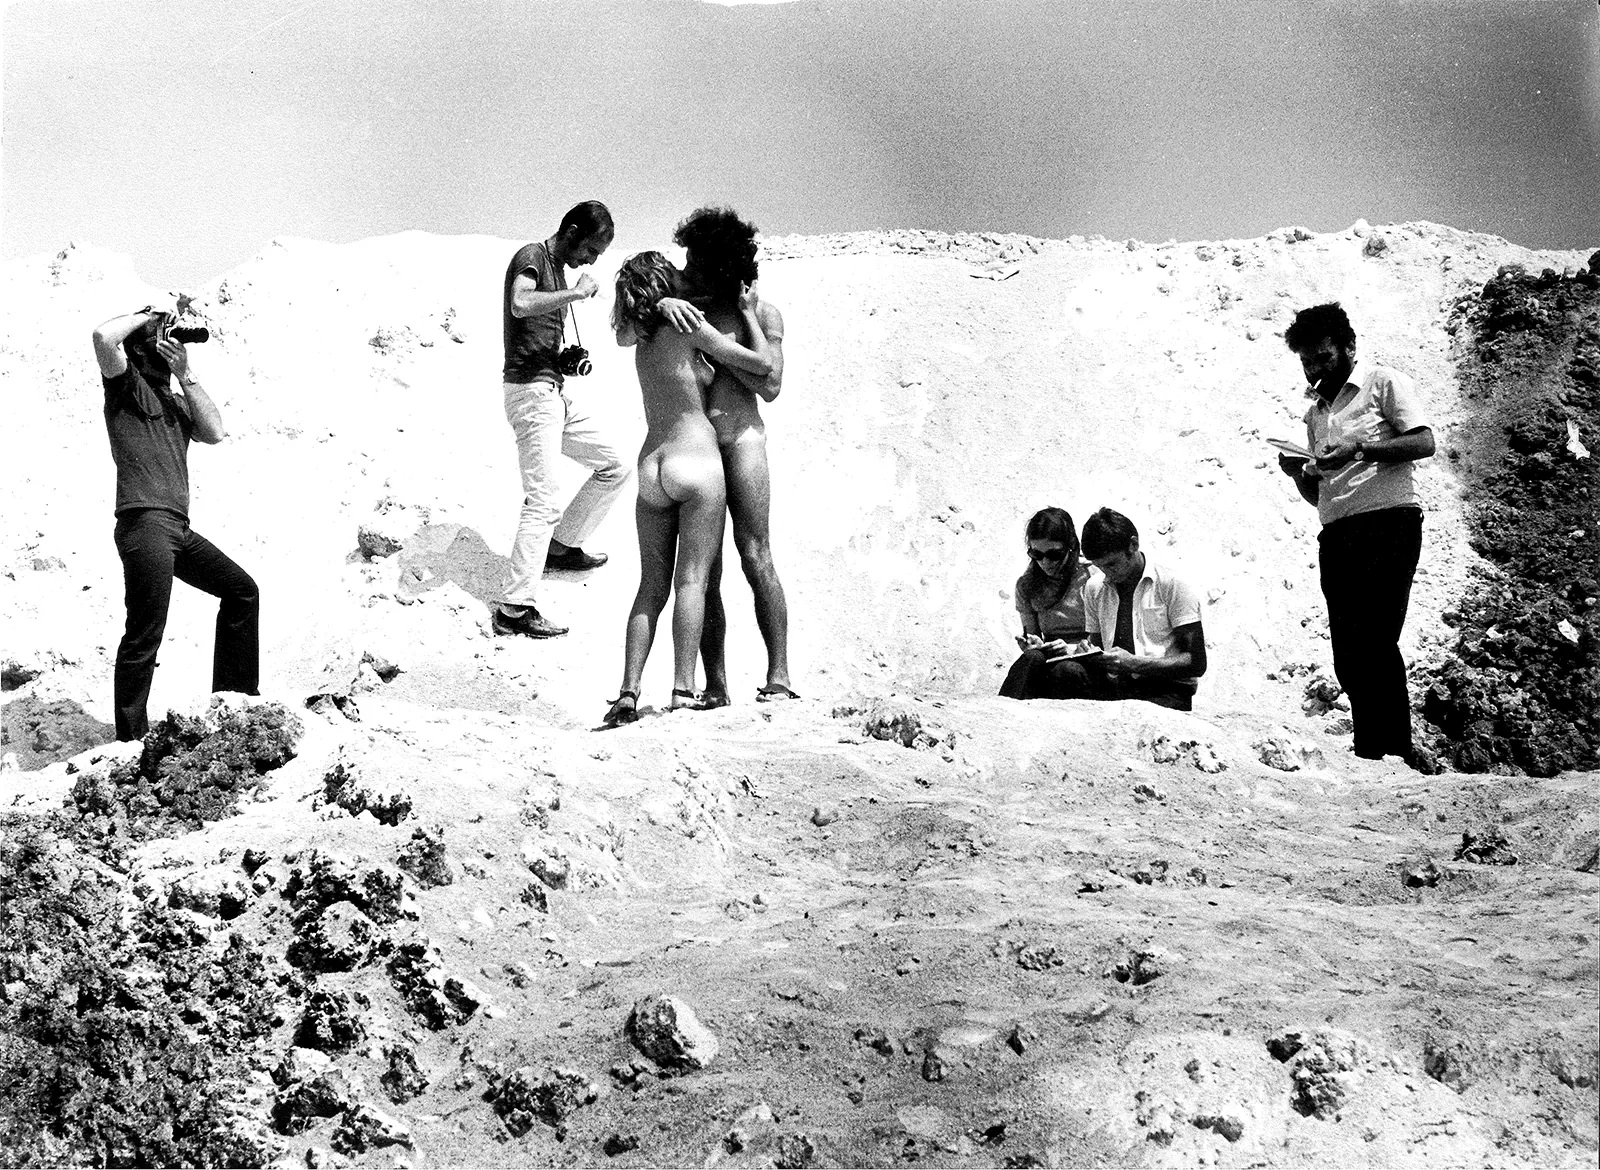 Sirio Luginbühl, Amarsi a Marghera o Il bacio, 1970, foto di scena. Courtesy Antonio Concolato.